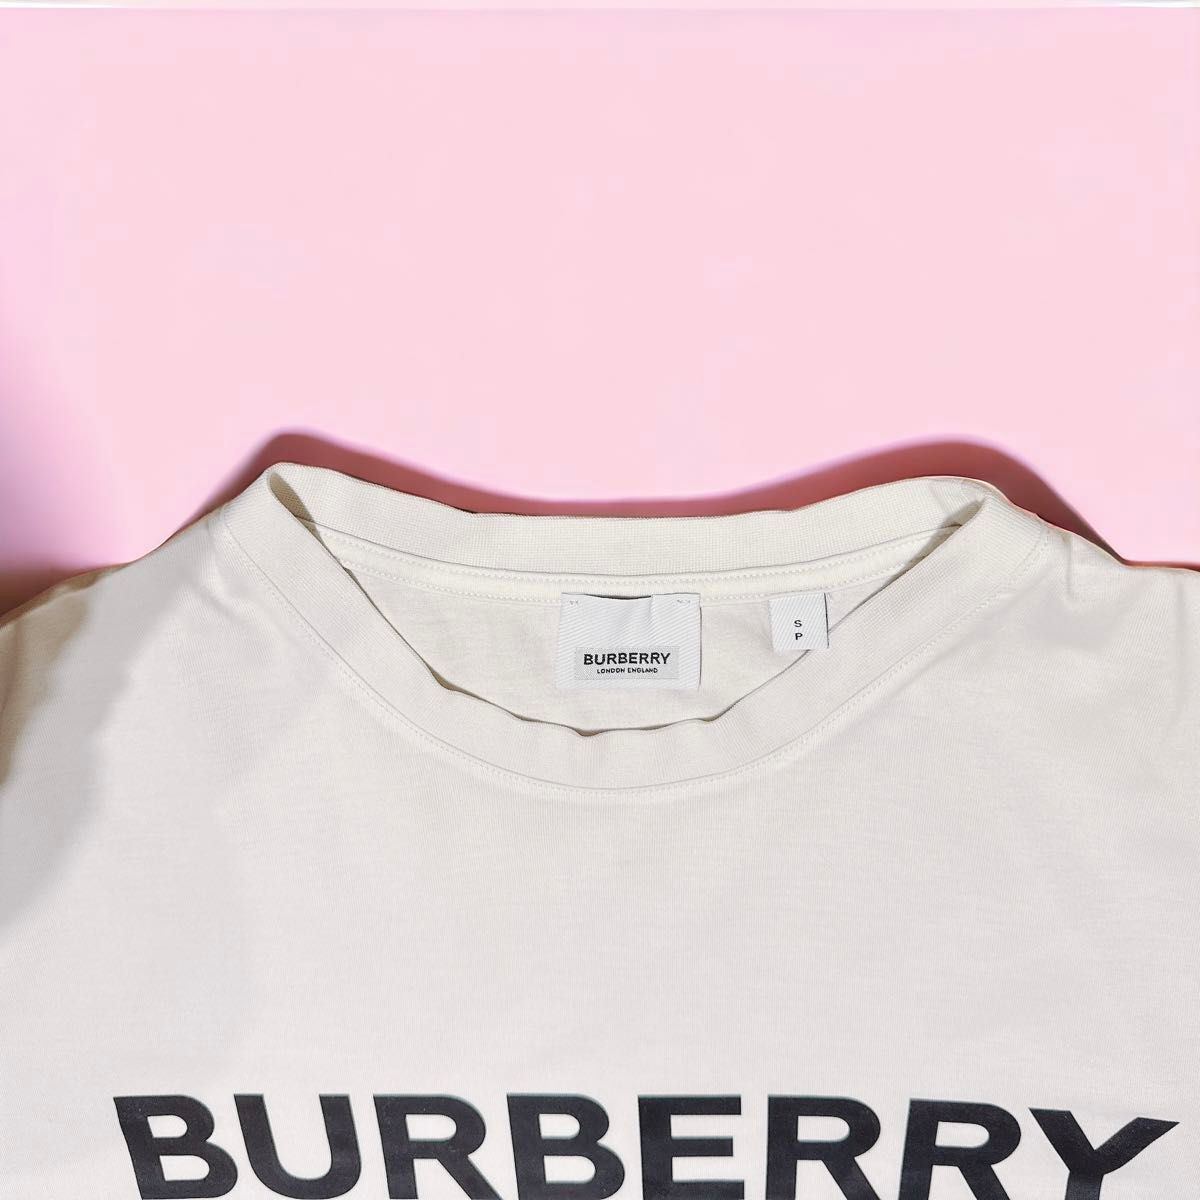 BURBERRY バーバリー TB ロゴプリント Tシャツ カットソー 半袖